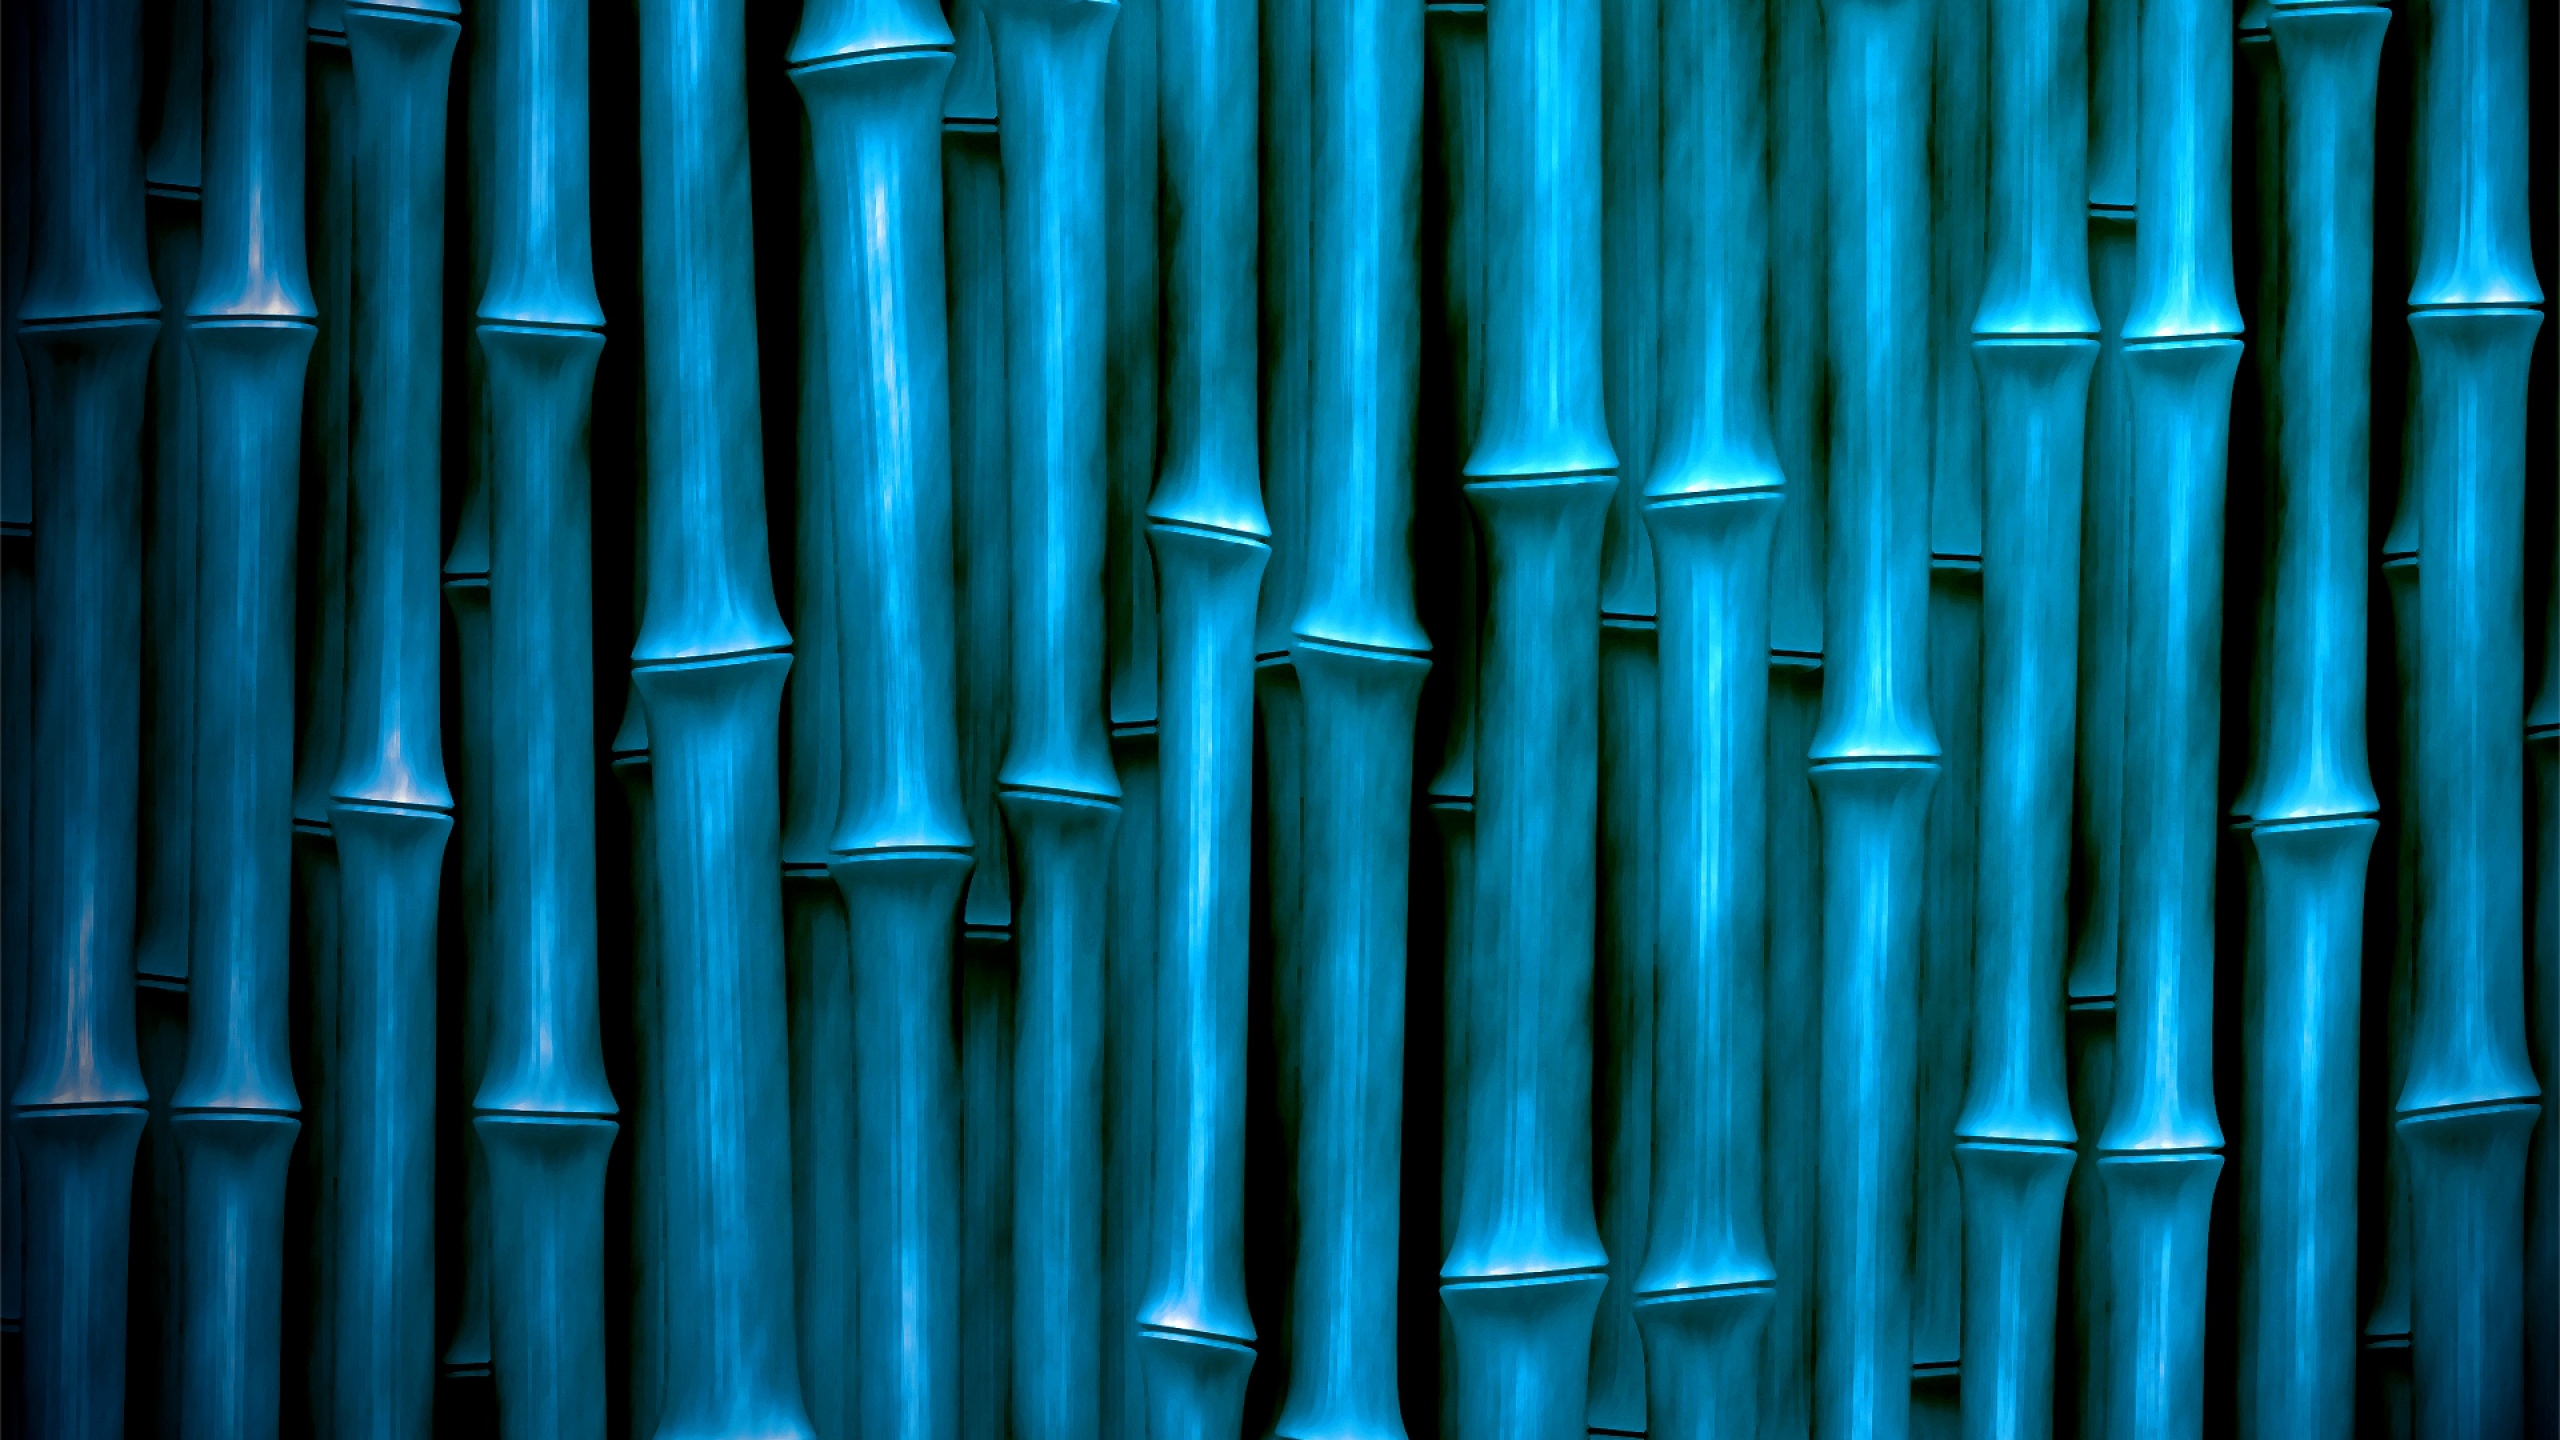 Wallpaper Bamboo Sticks Vertical Mac Imac HD